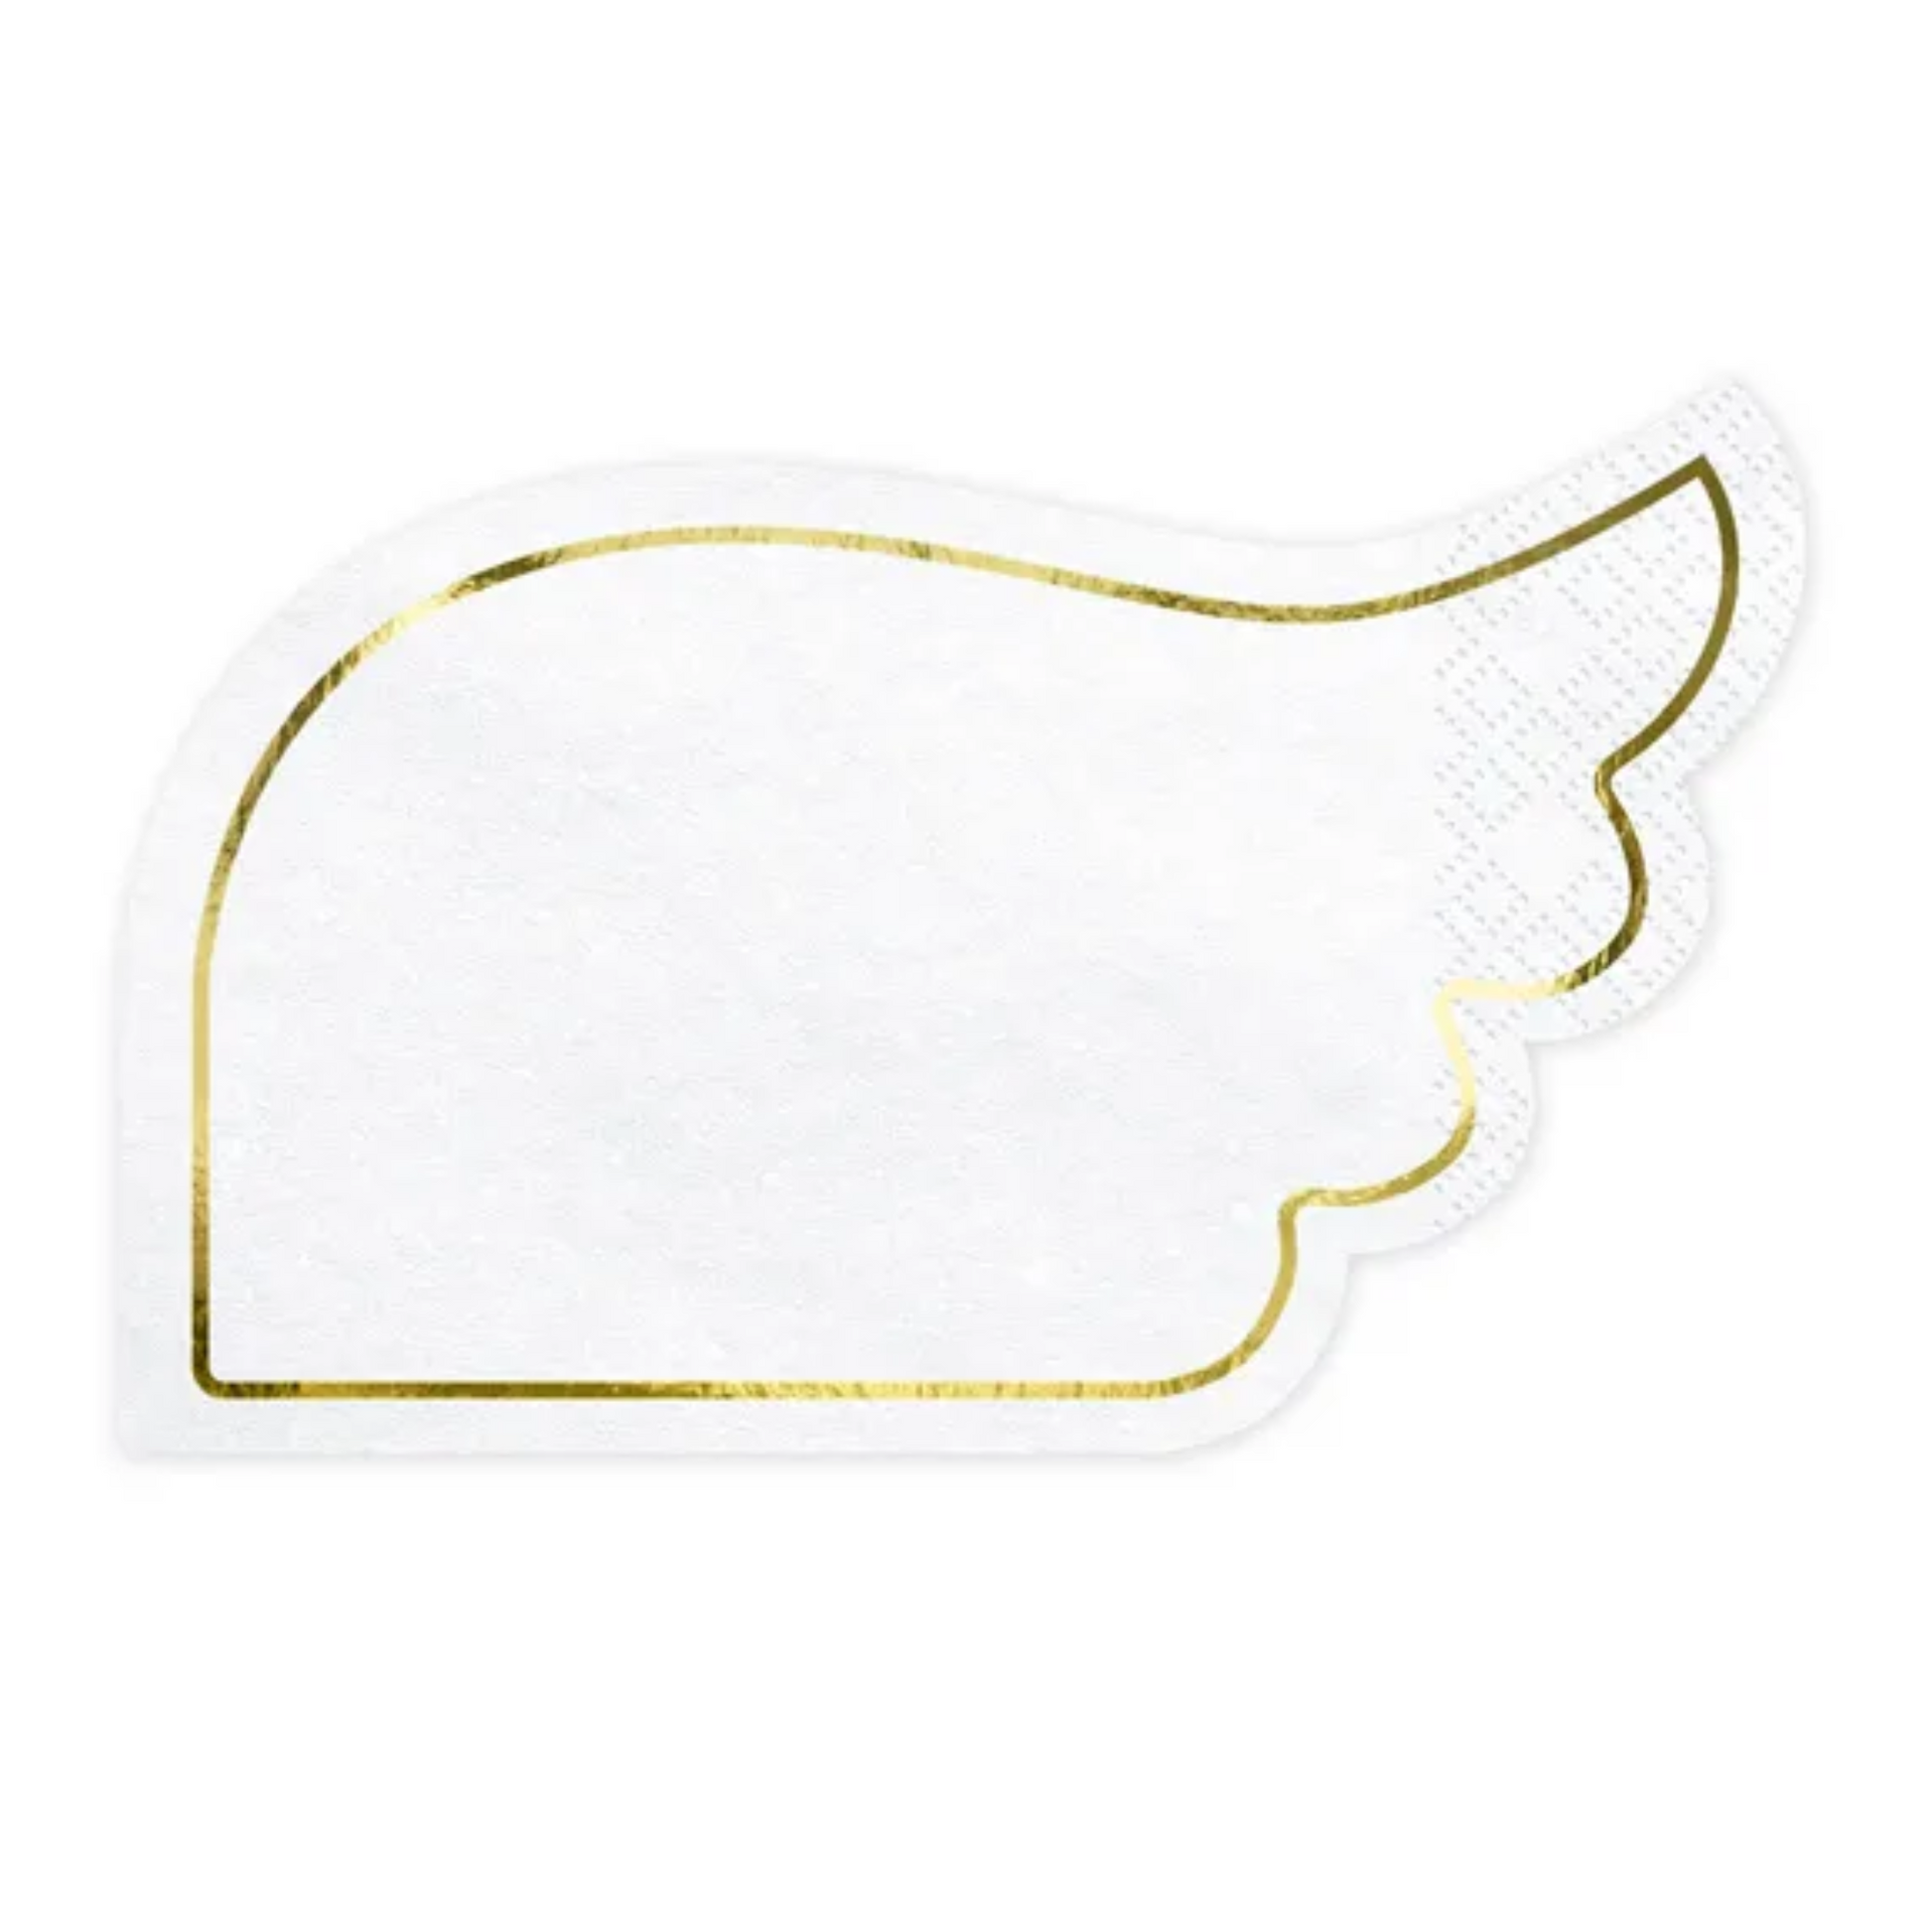 die cut paper napkins in shape of angel wing